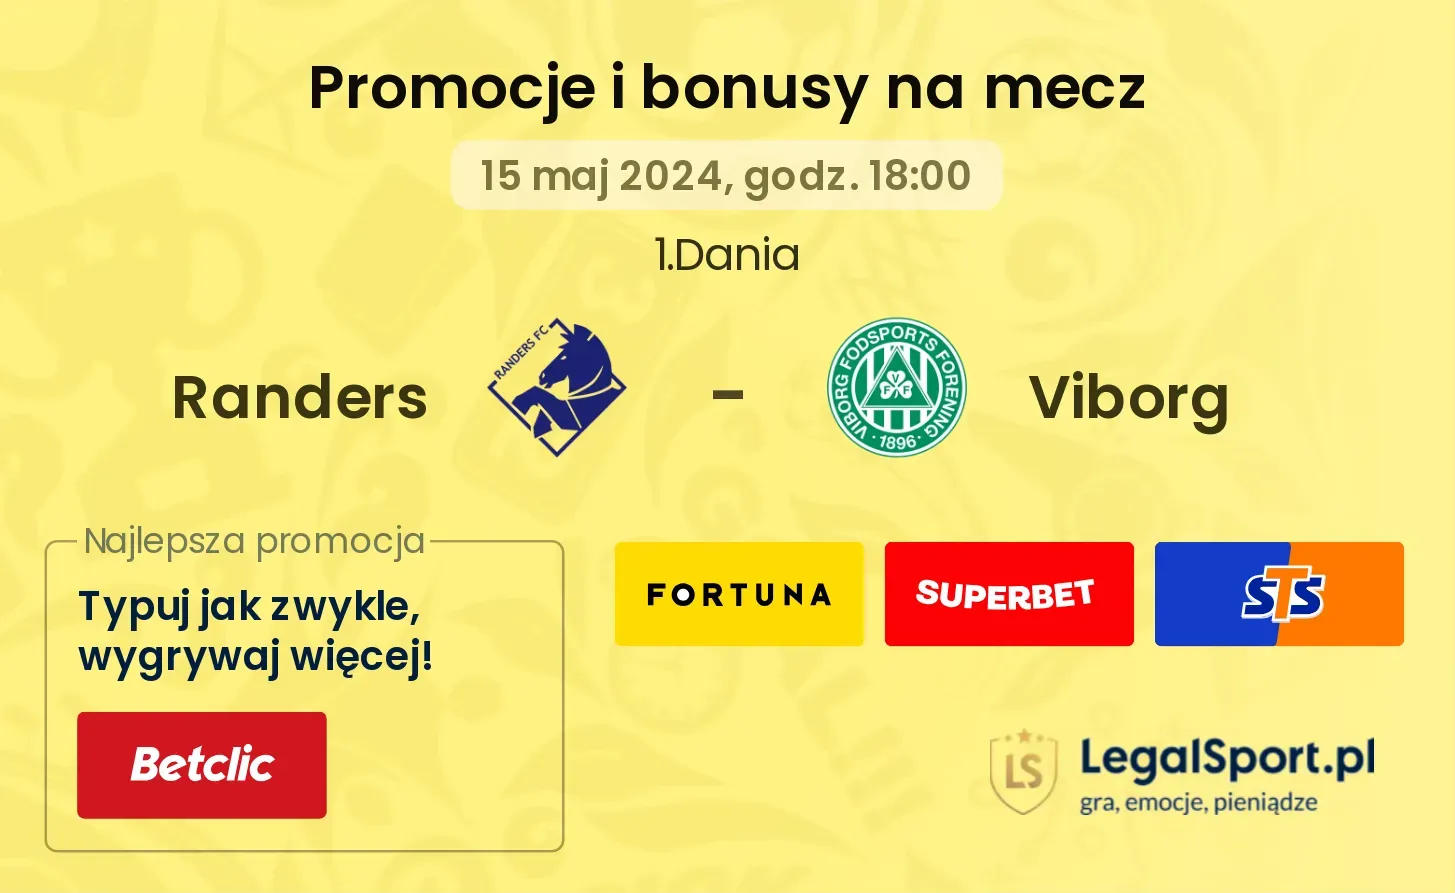 Randers - Viborg promocje bonusy na mecz